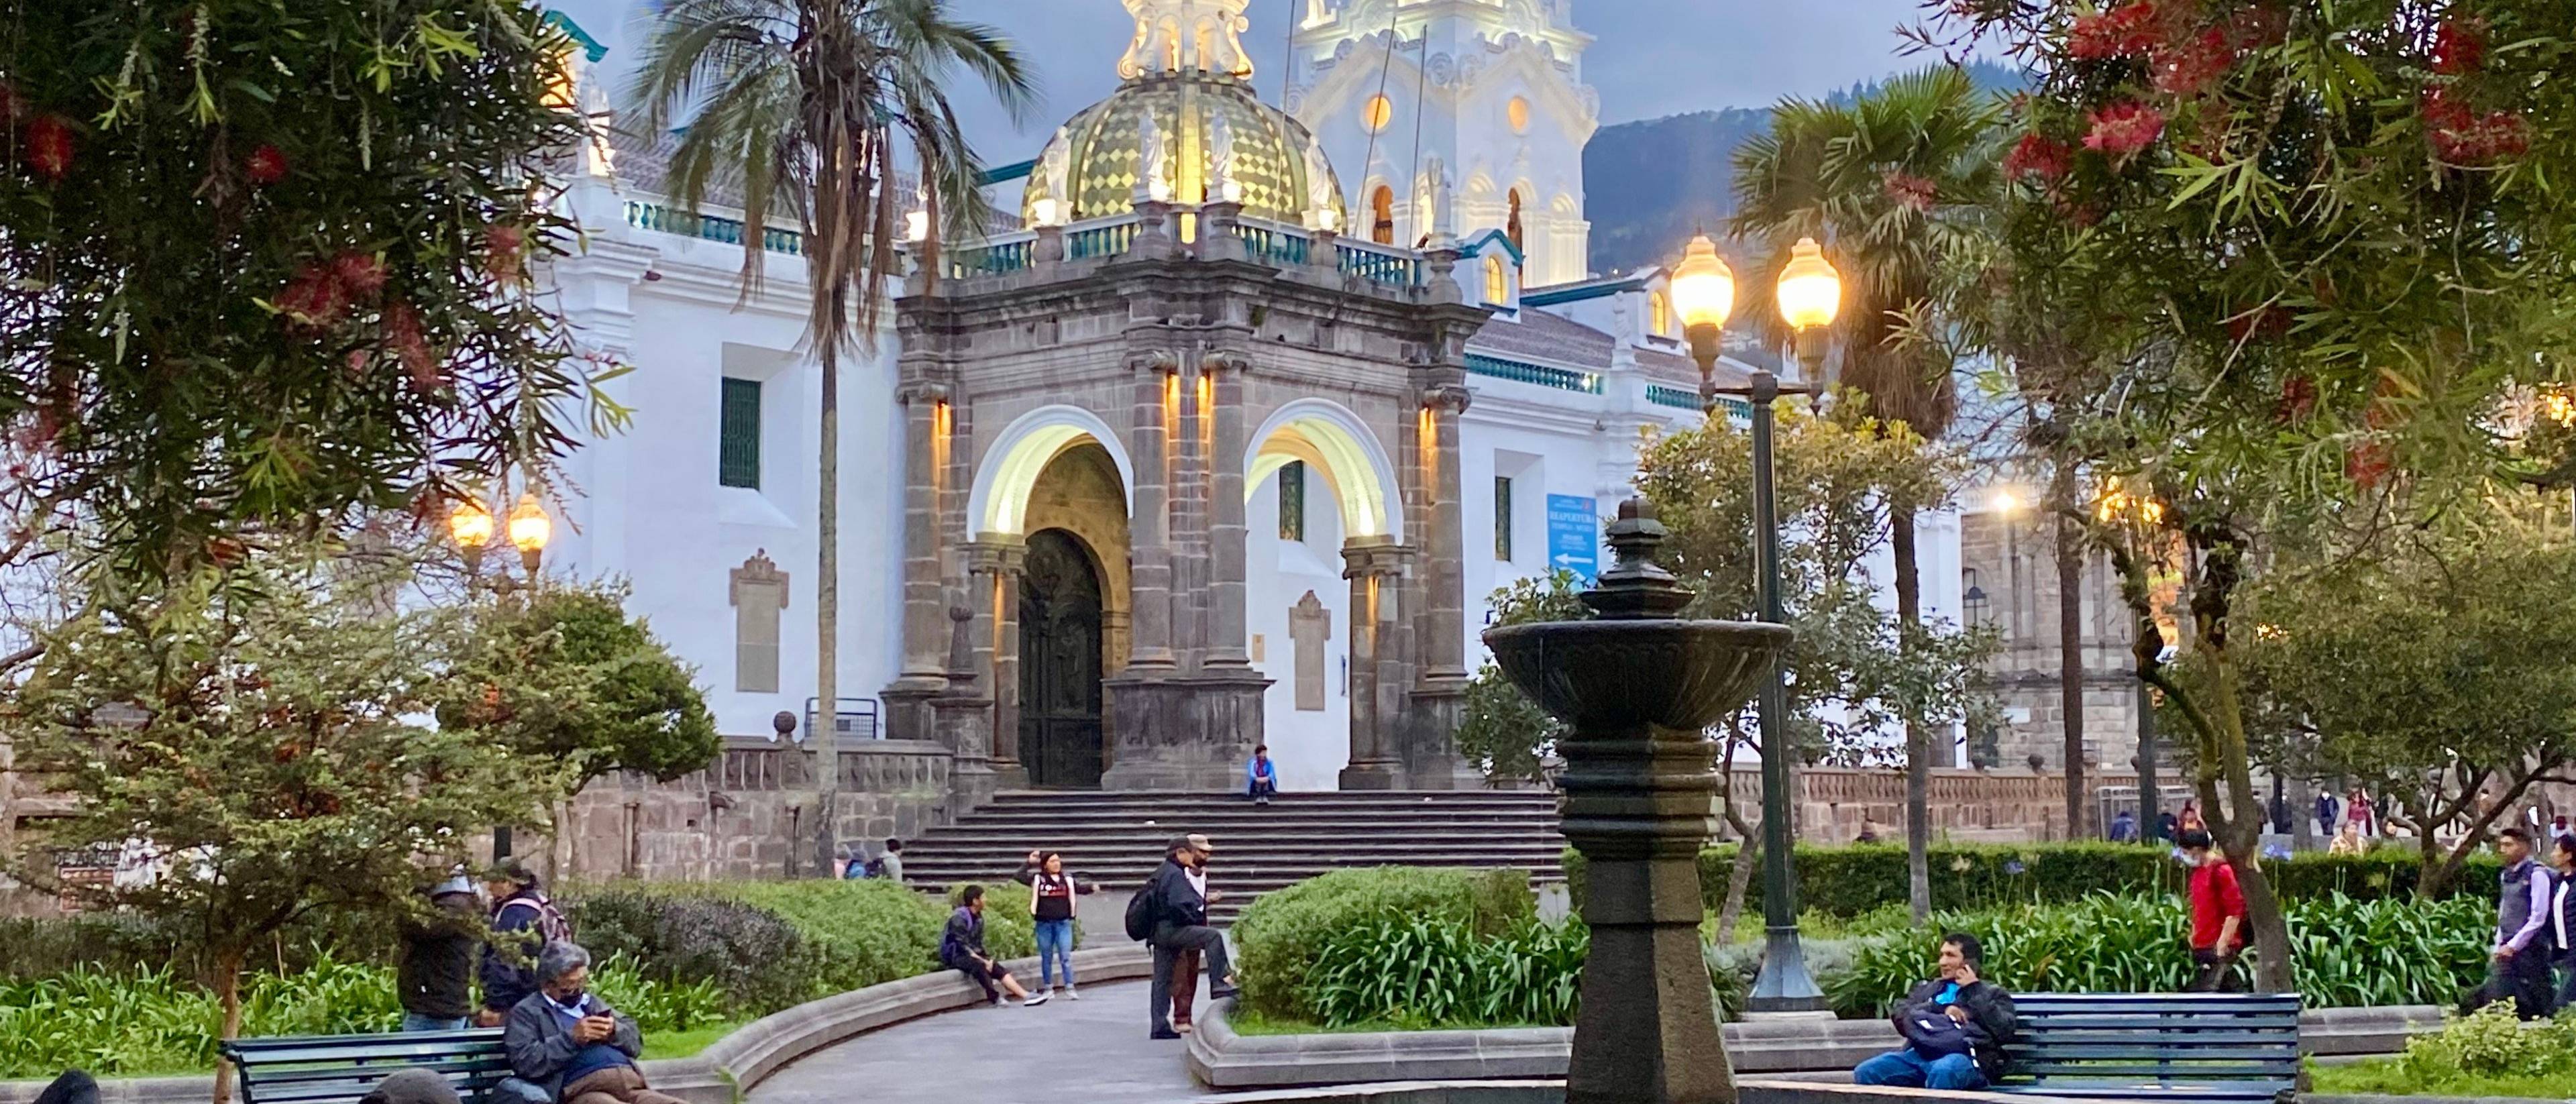 Ankunft in Quito, die „Stadt des ewigen Frühlings“